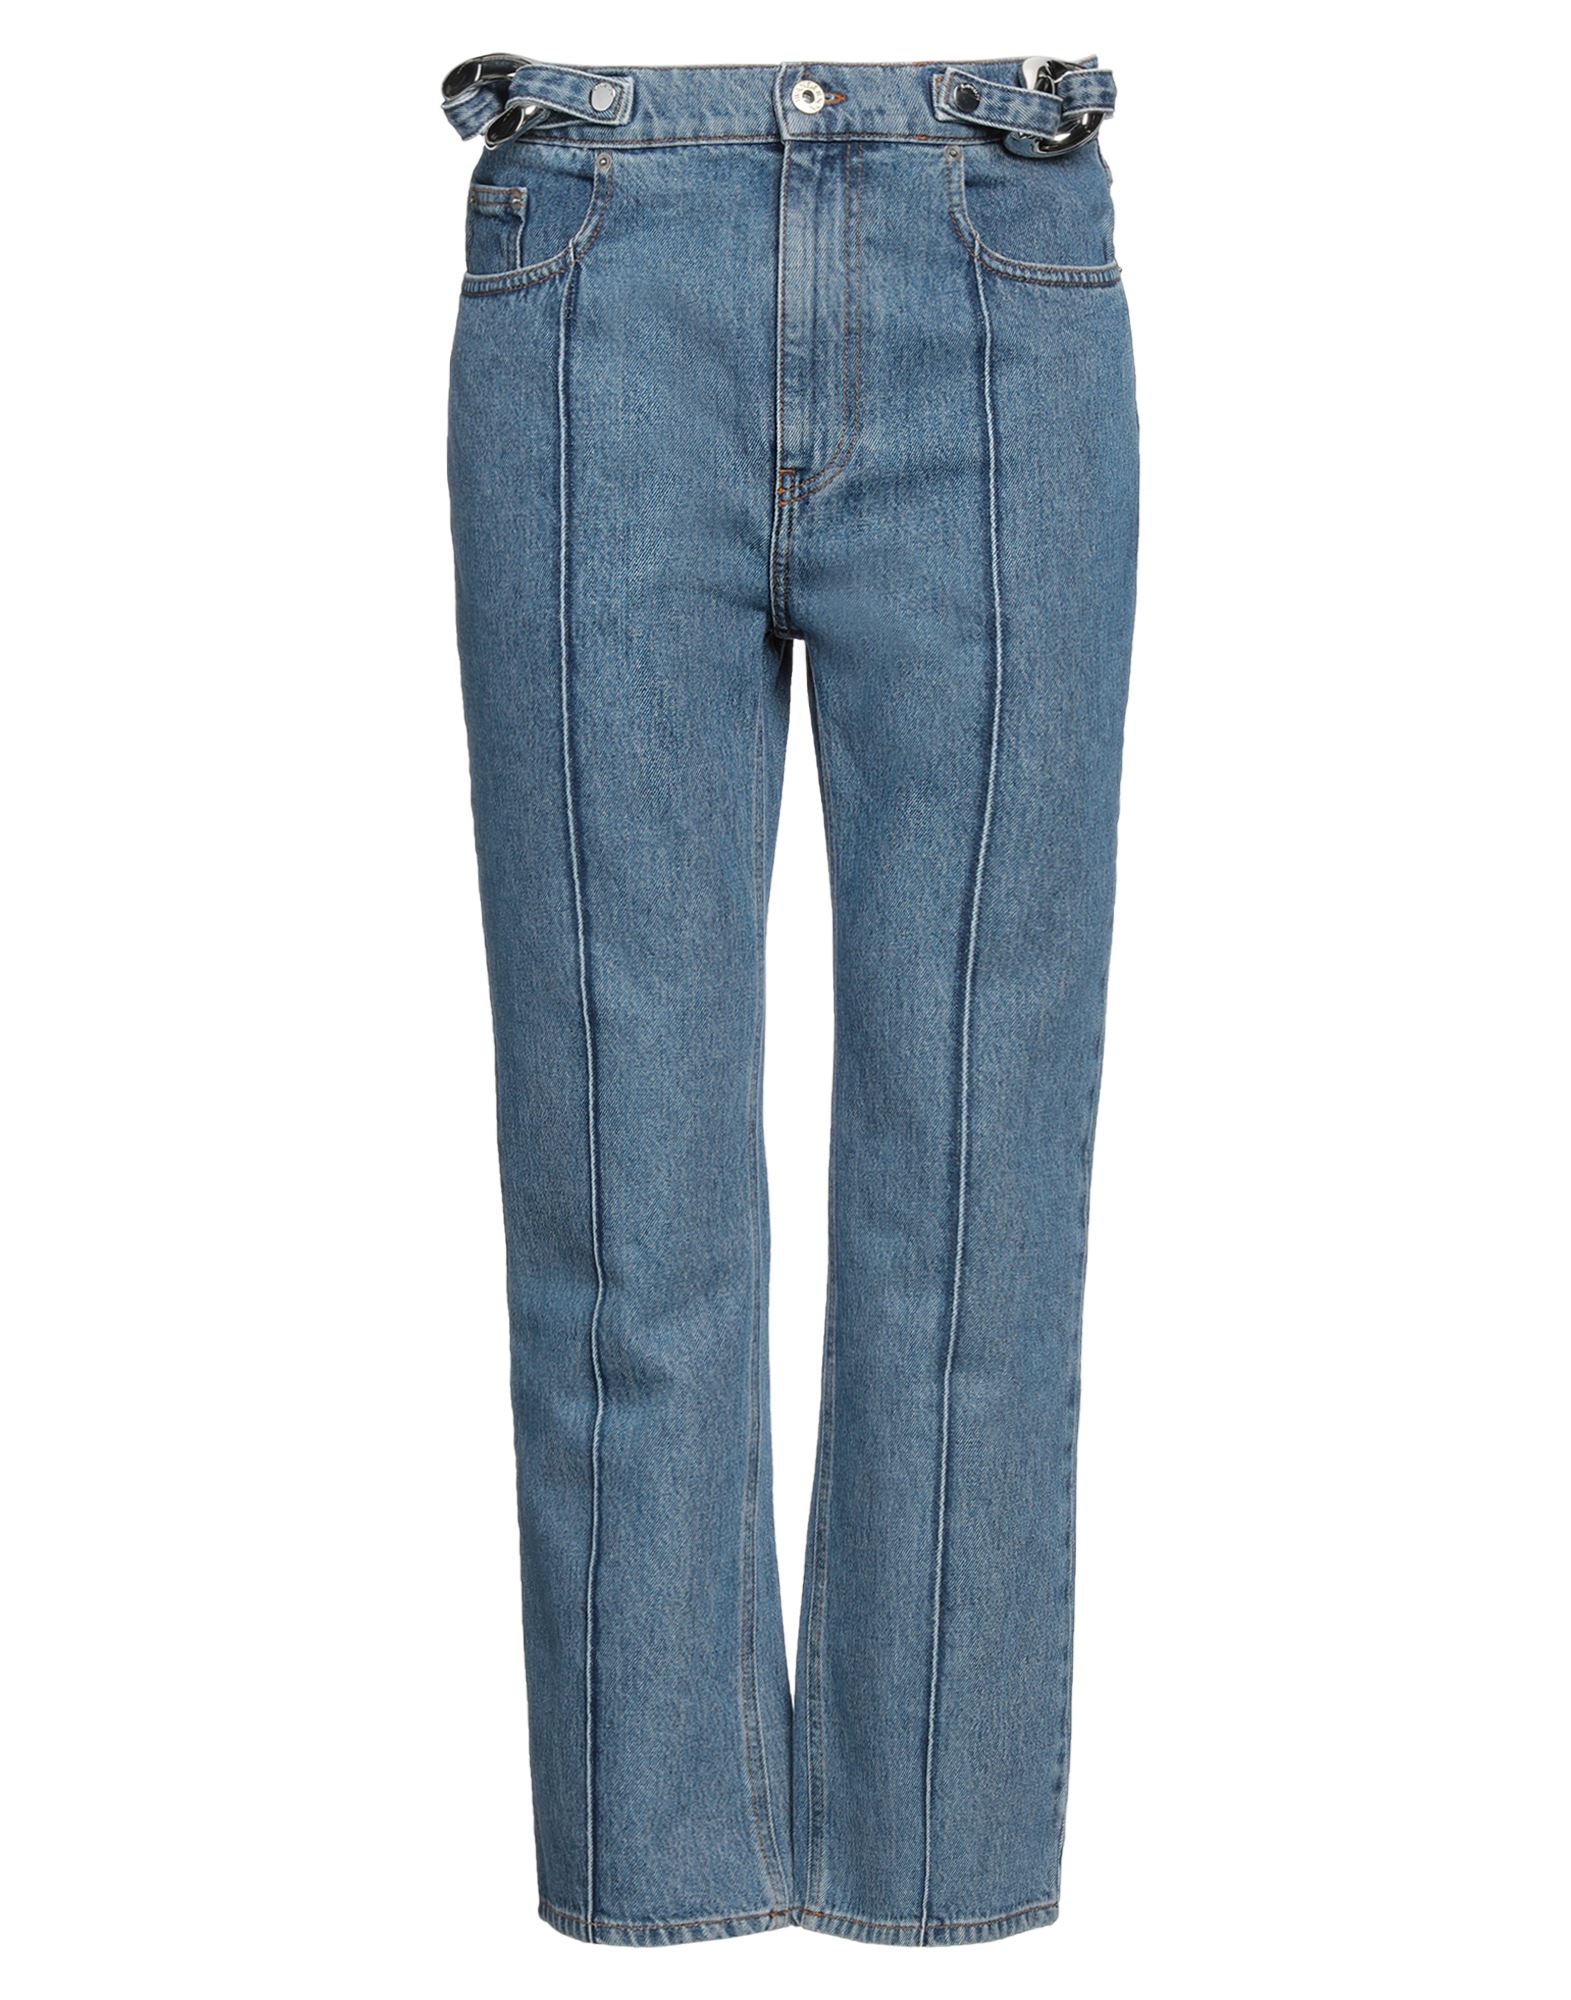 Shop Jw Anderson Man Jeans Blue Size 34 Cotton